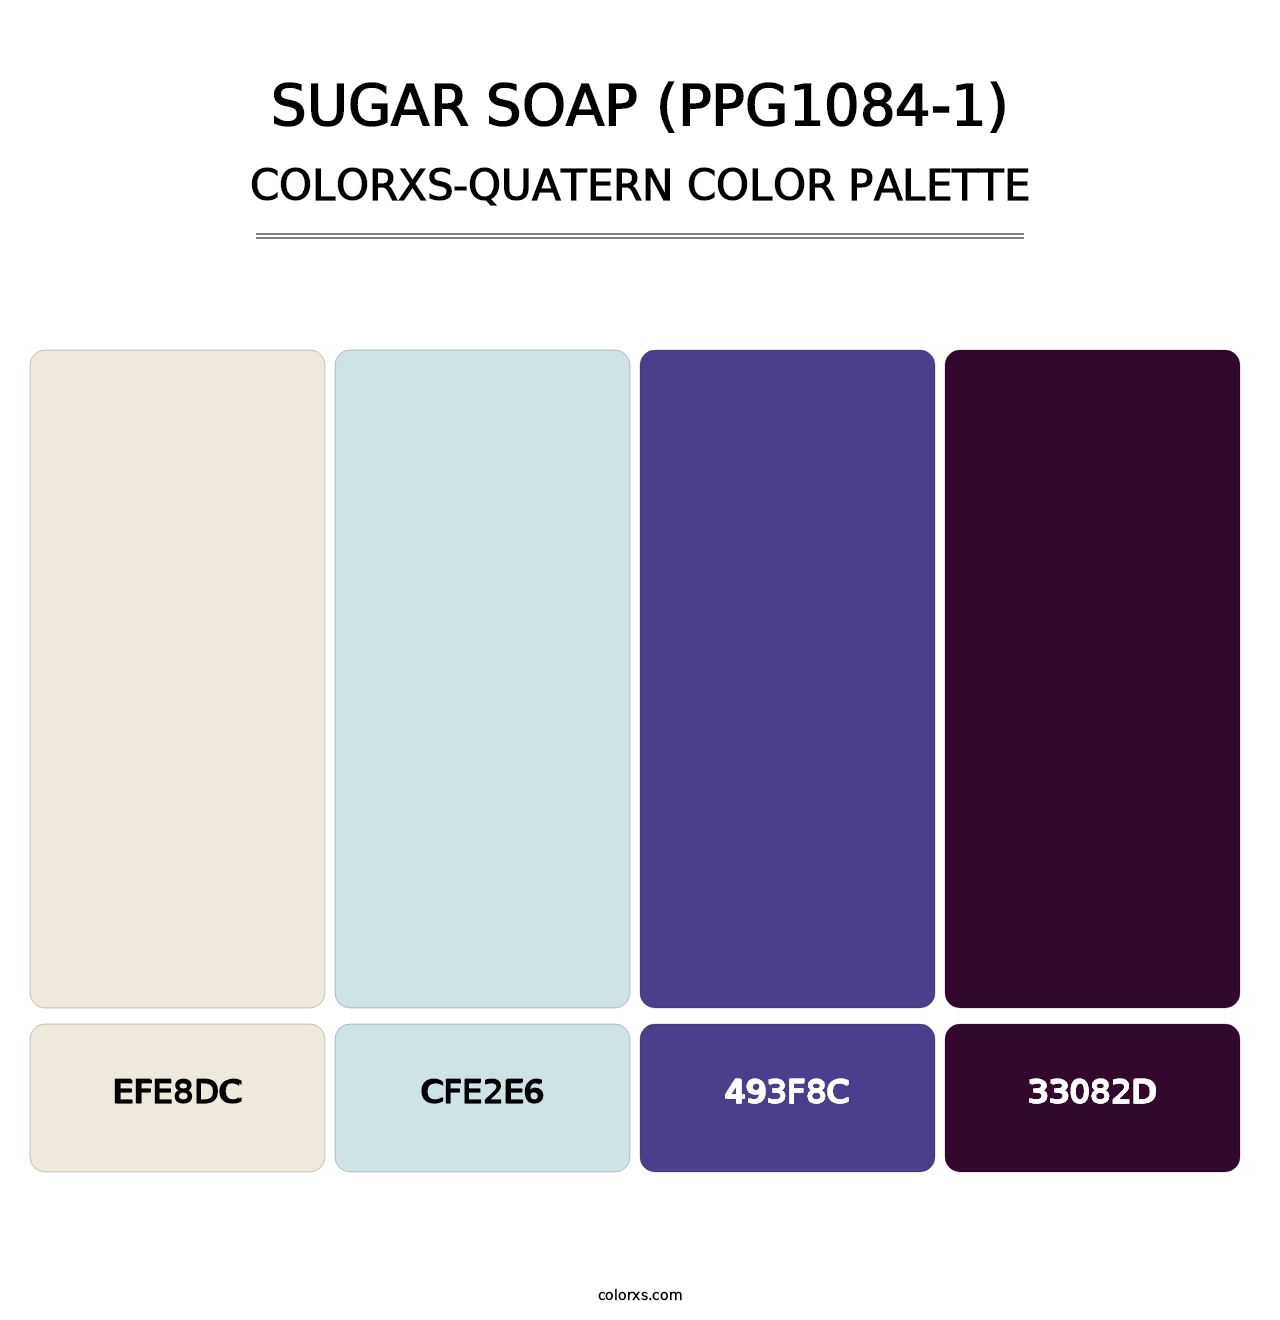 Sugar Soap (PPG1084-1) - Colorxs Quatern Palette